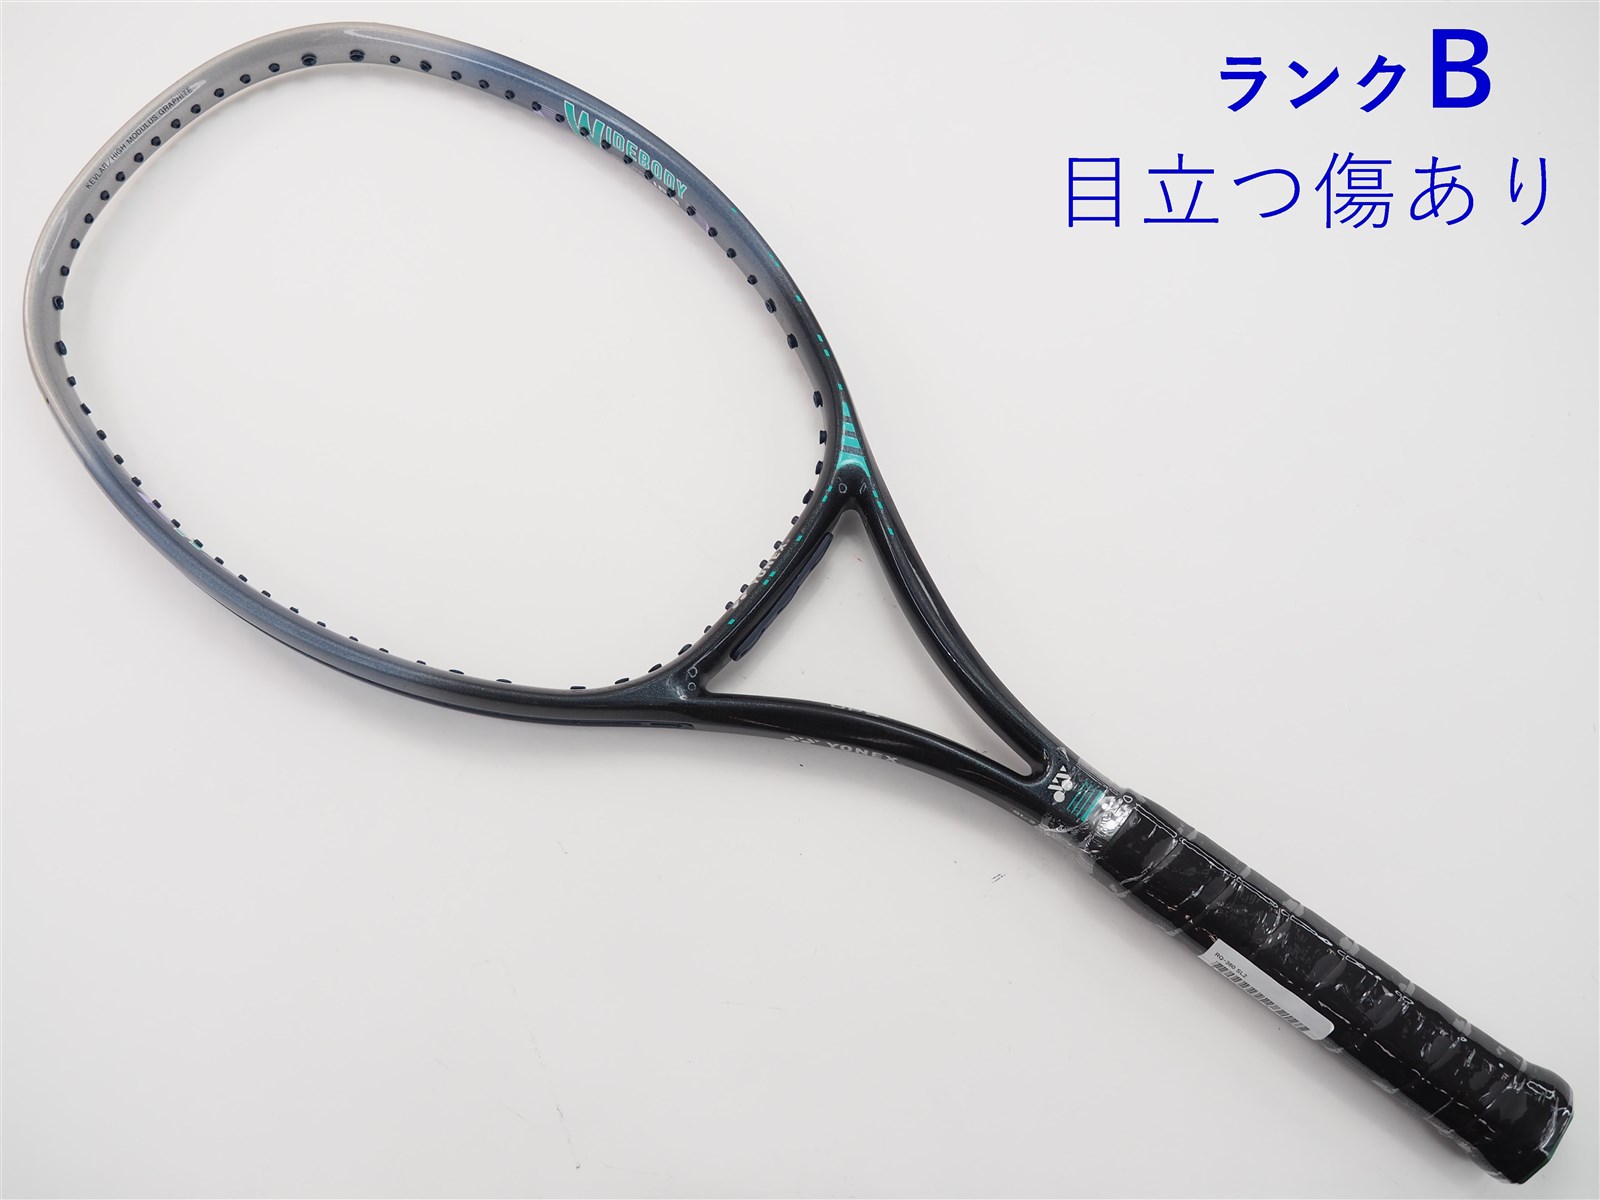 【中古】ヨネックス RQ-360YONEX RQ-360(SL2)【中古 テニスラケット】【送料無料】の通販・販売| ヨネックス|  テニスサポートセンターへ